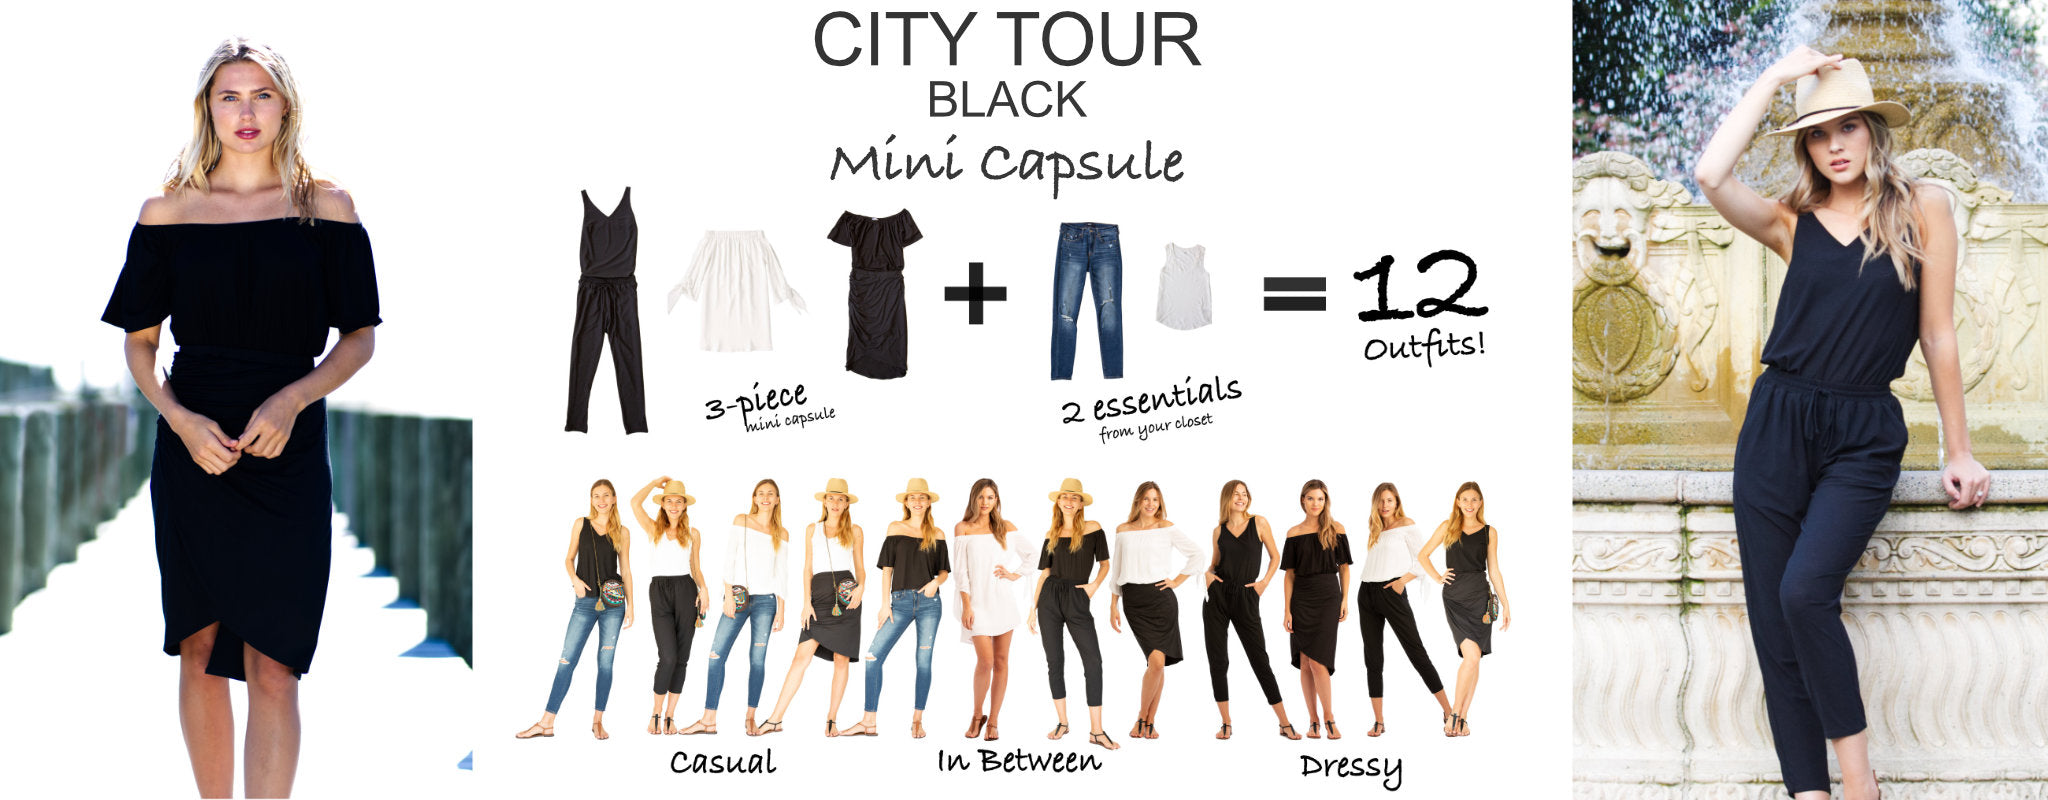 city mini capsule